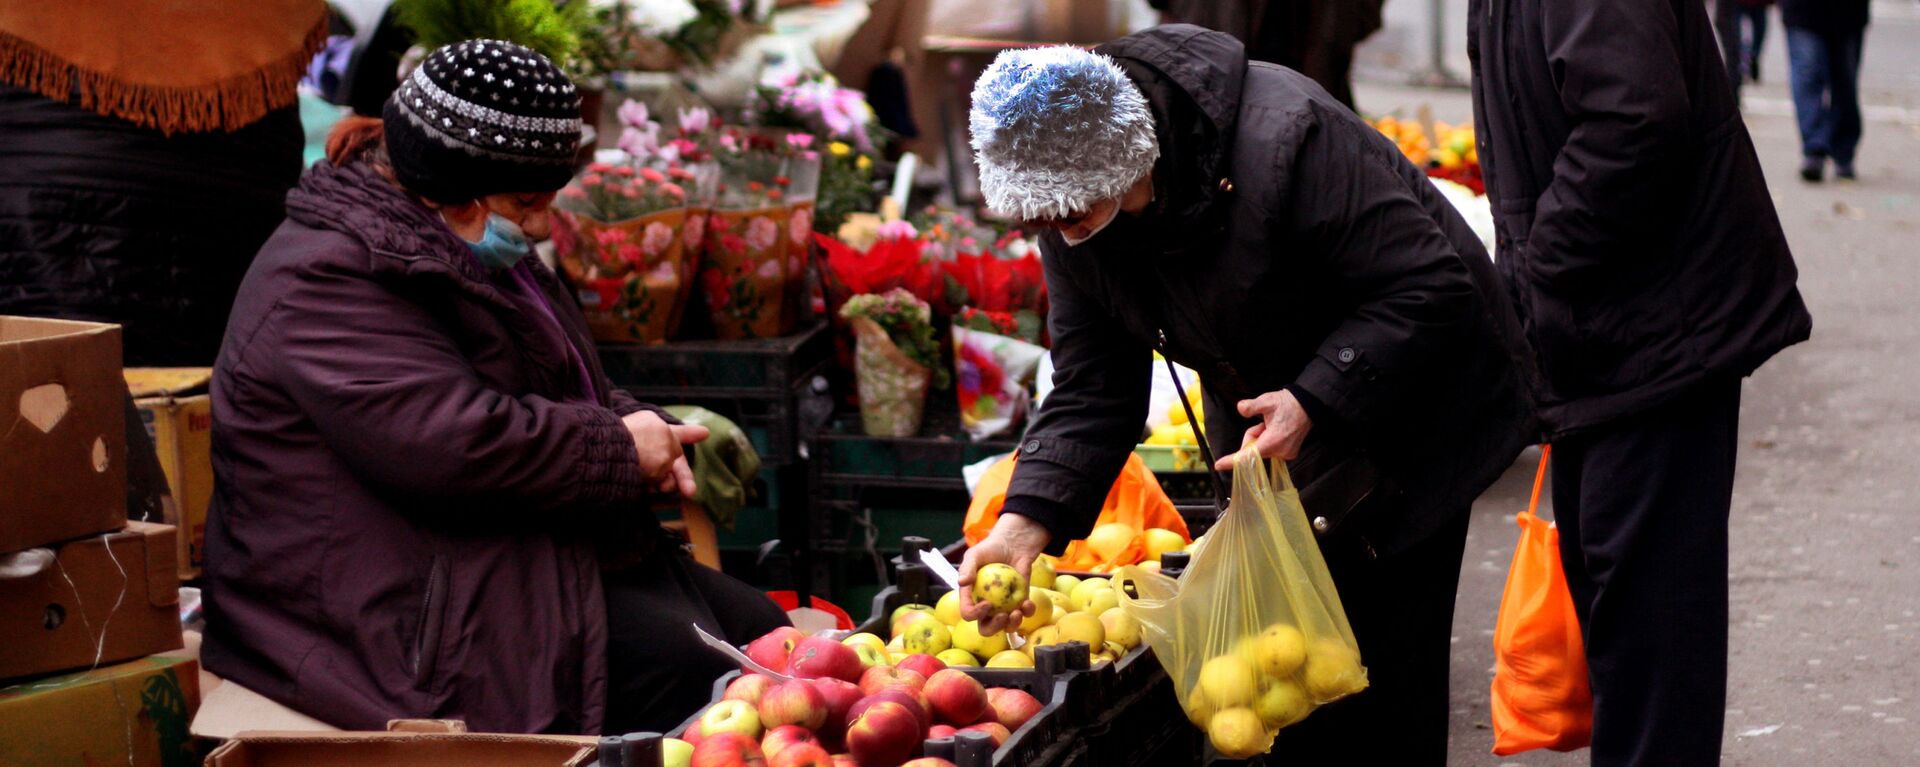 Работа во время пандемии - уличная торговля овощами и фруктами - Sputnik Грузия, 1920, 05.11.2021